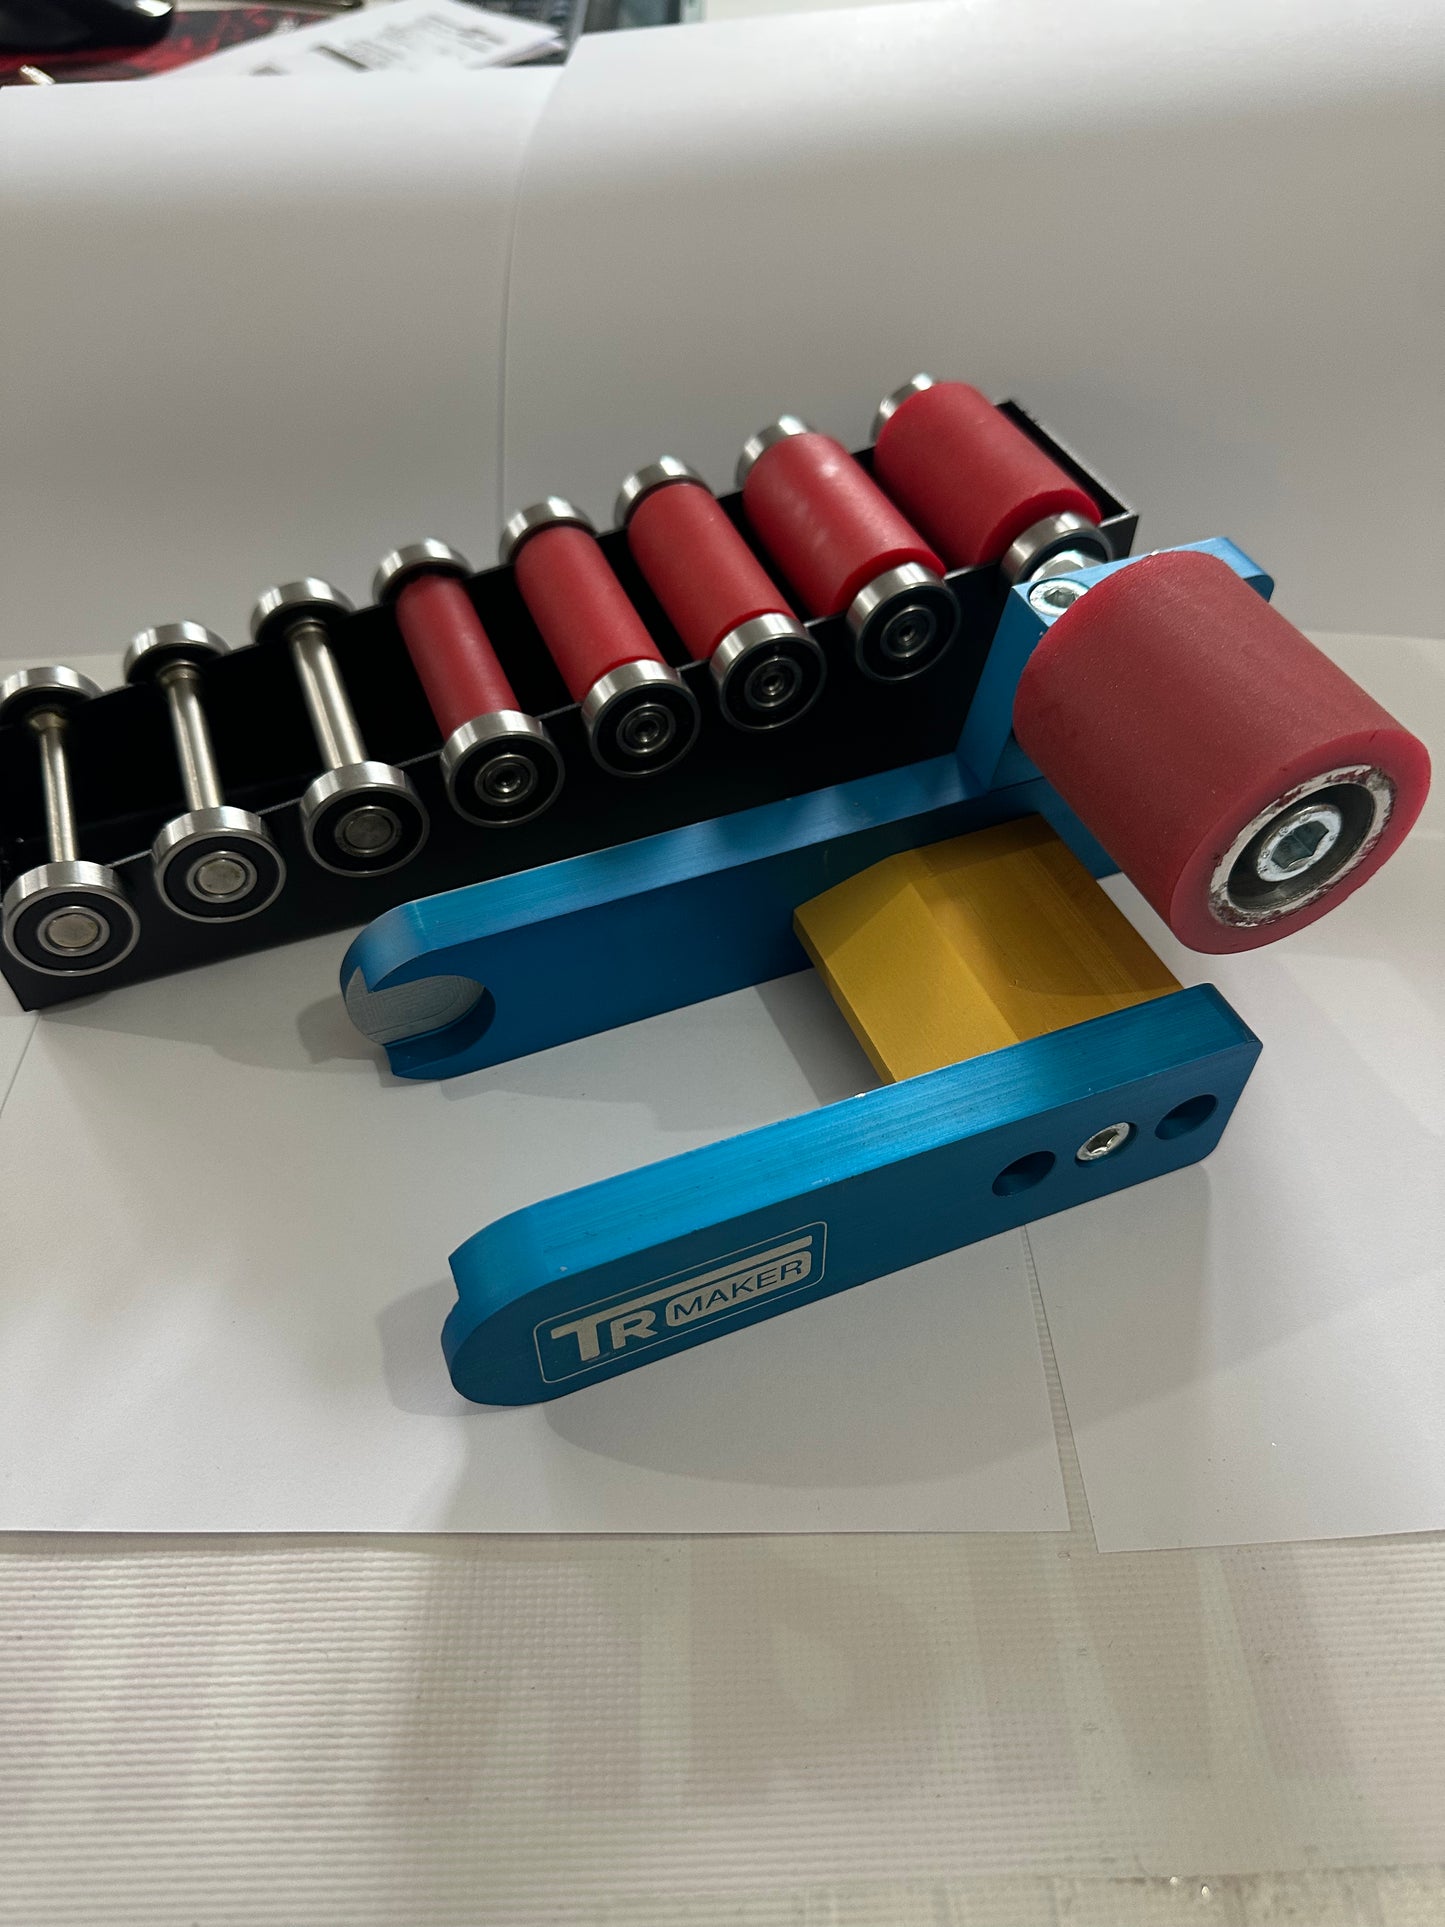 TR Maker Belt Grinder 2x72 small wheel & holder for  grinders 1big rubber whell 8 wheel kit